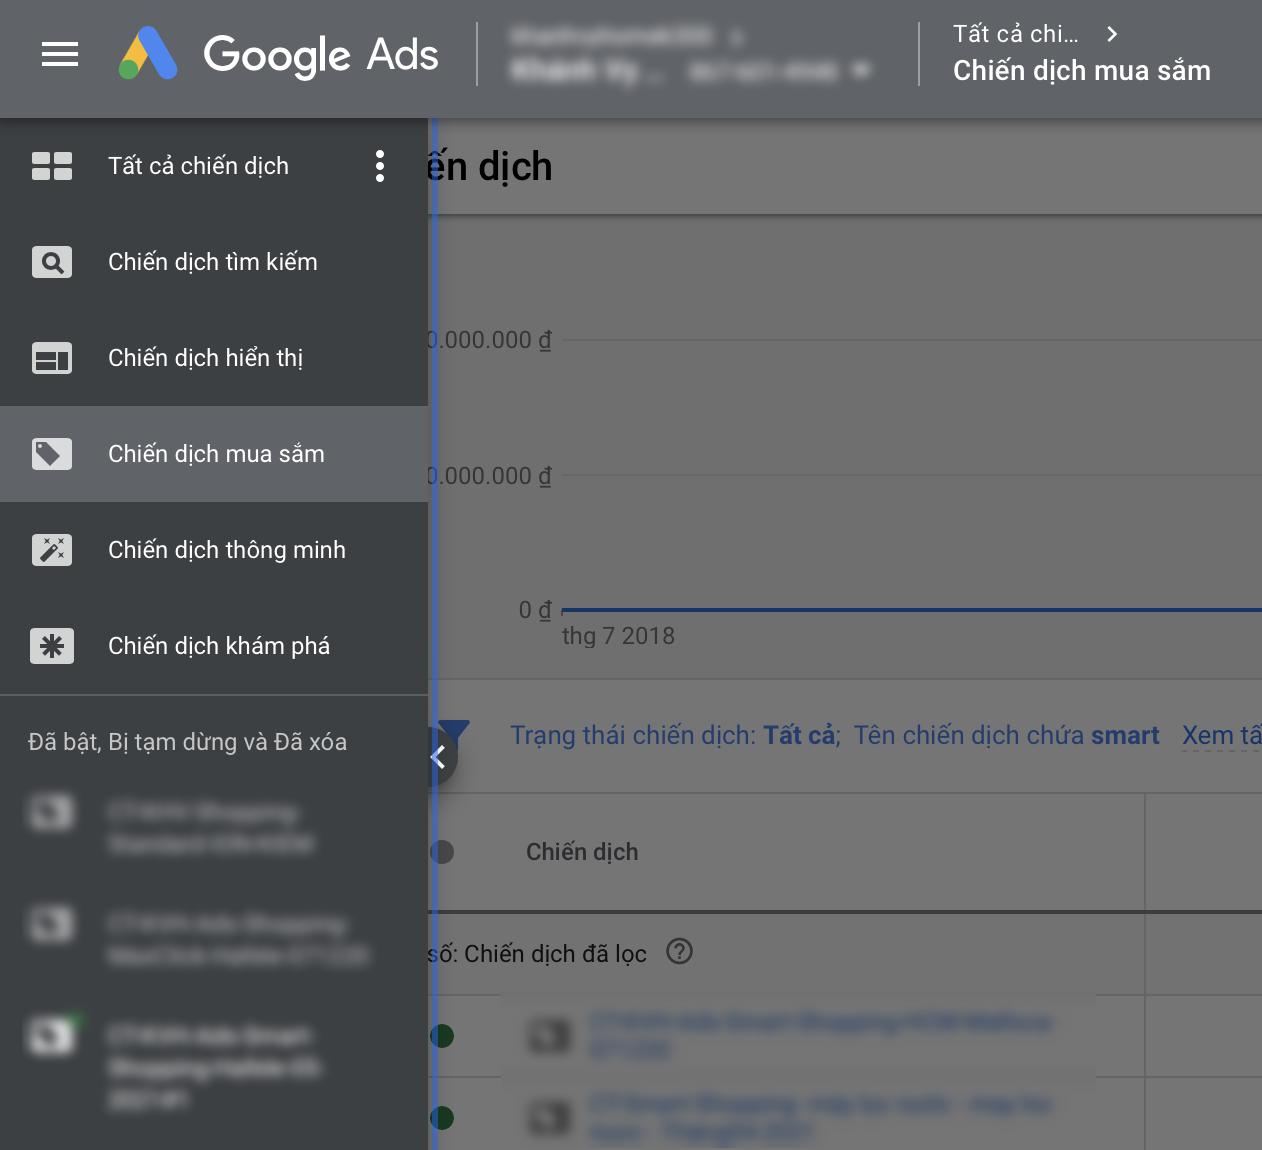 Vào Google Ads chọn “Chiến dịch Mua sắm”